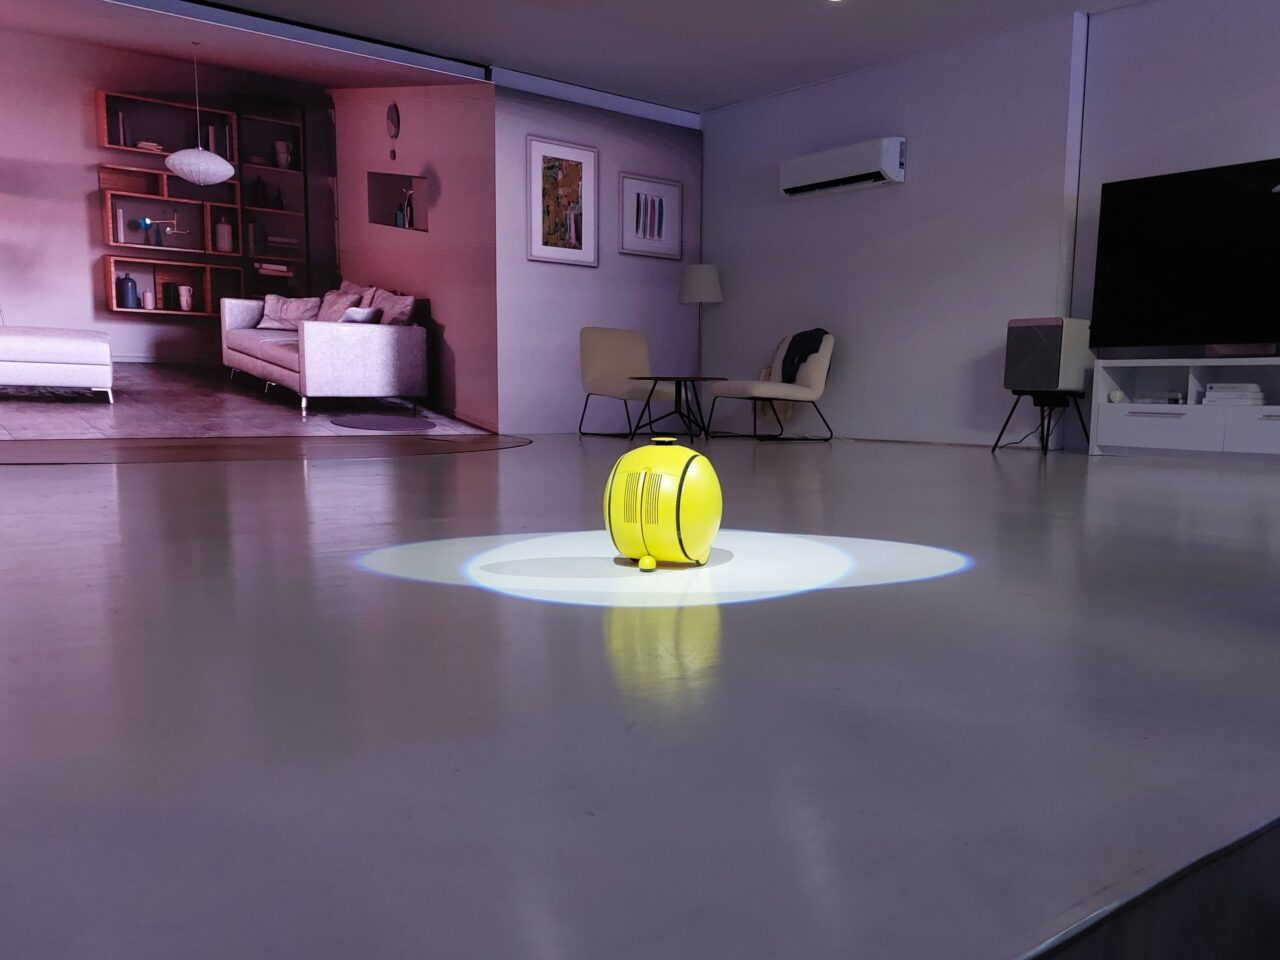 Nowoczesny salon z żółtym robotem Samsung Ballie na środku jaśniejszej okrągłej powierzchni na podłodze, meble w odcieniach szarości i beżu, klimatyzacja i telewizor na ścianie.